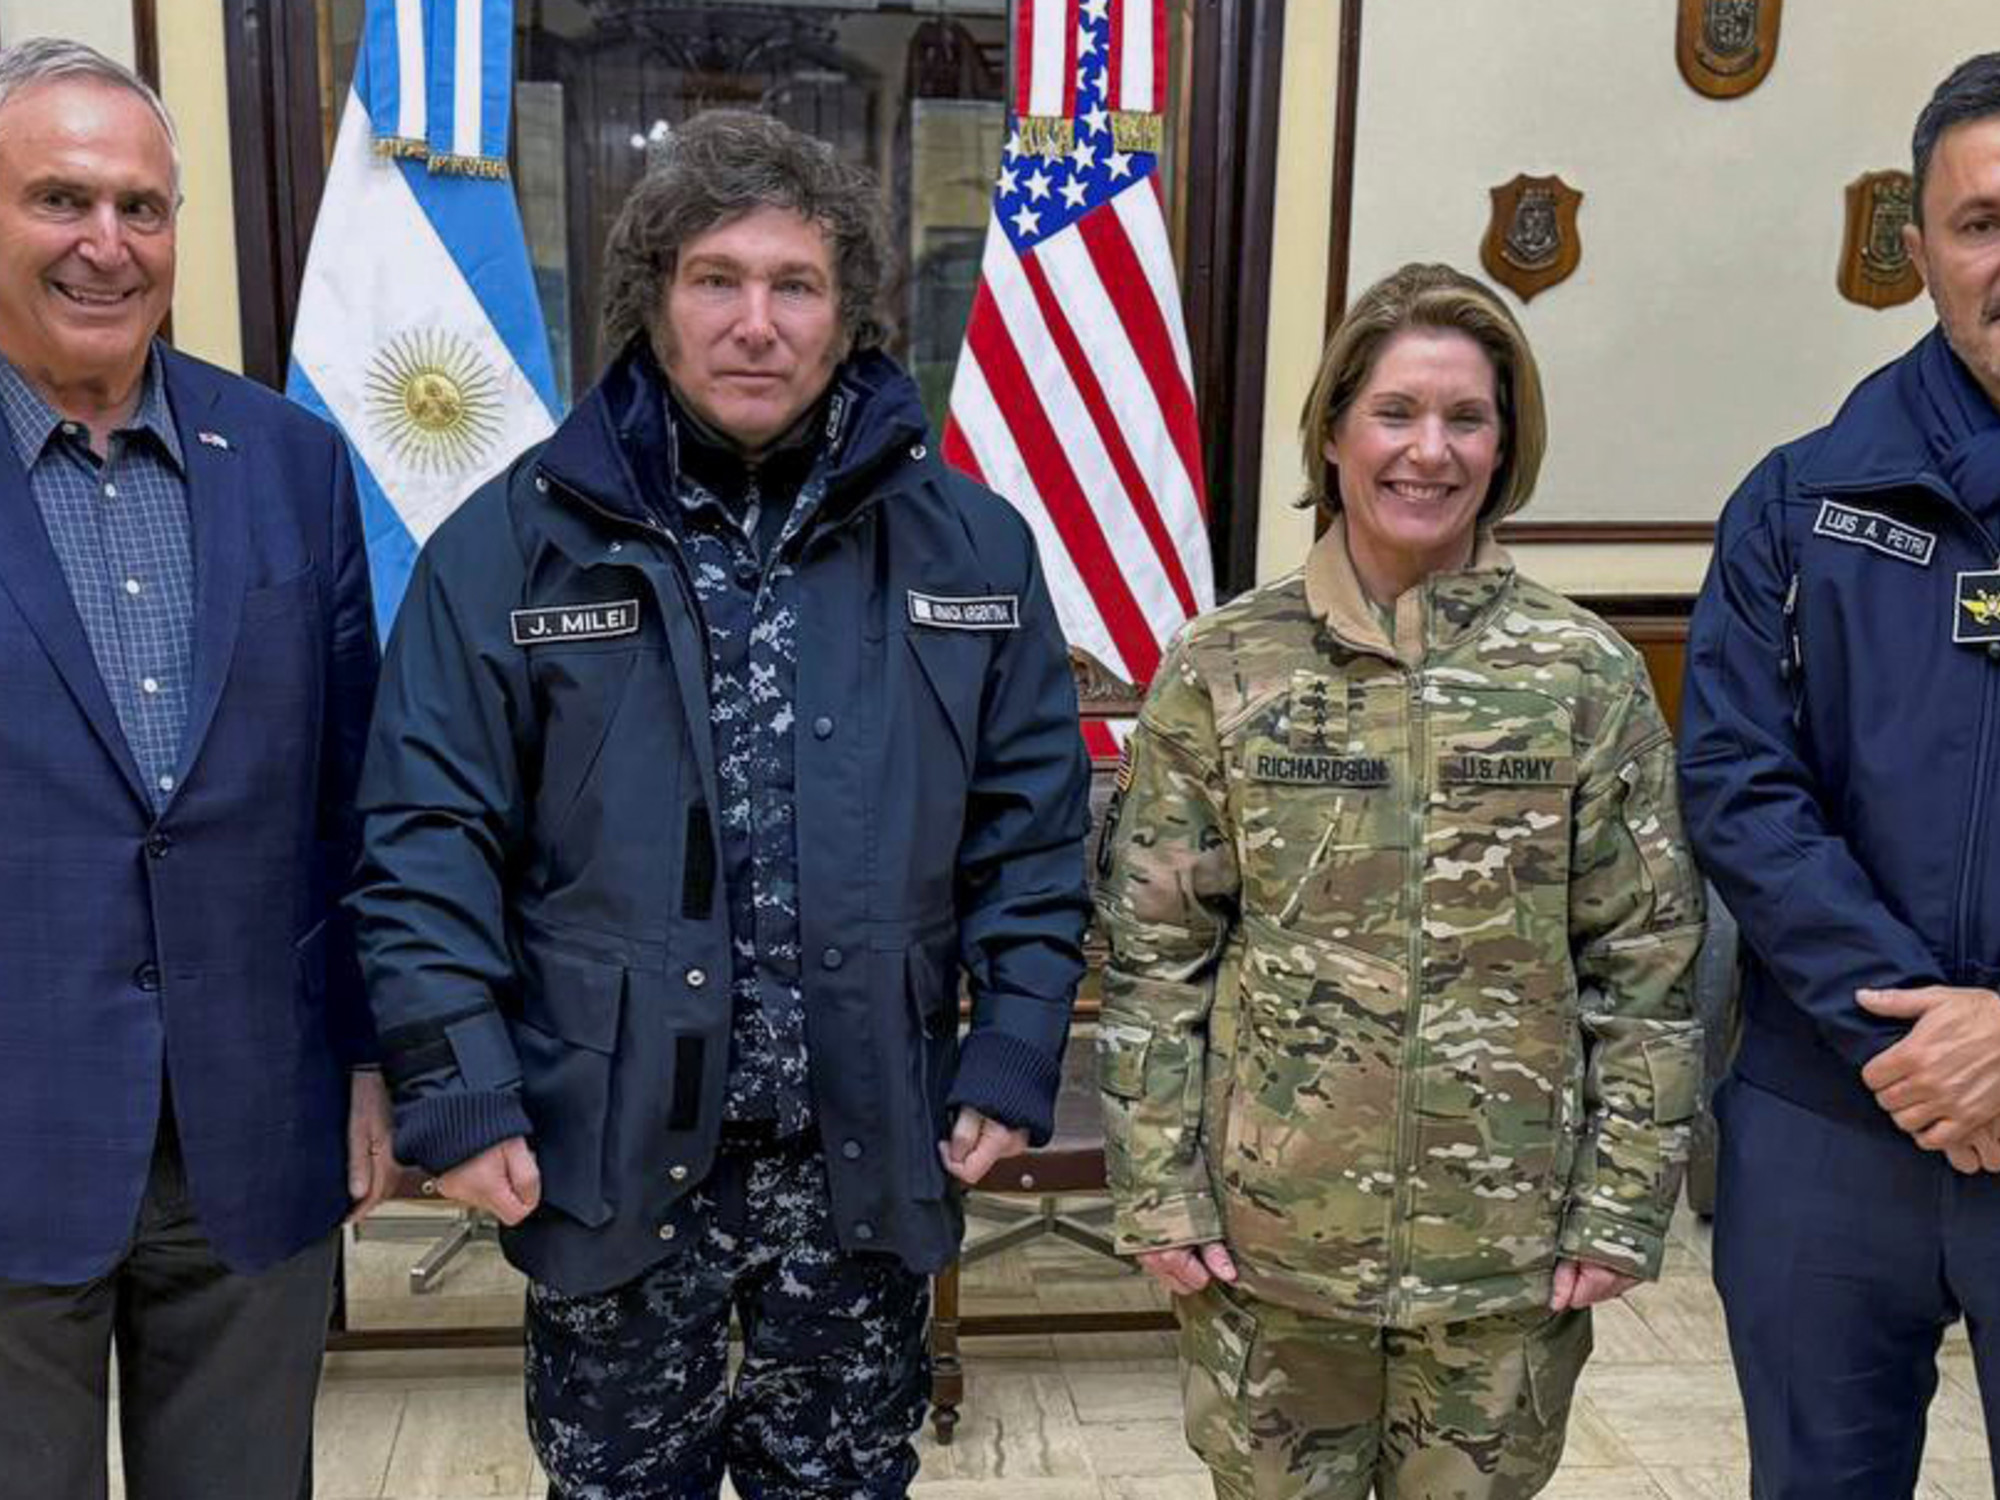 Estados Unidos envía 40 millones de dólares a la Argentina para financiamiento militar